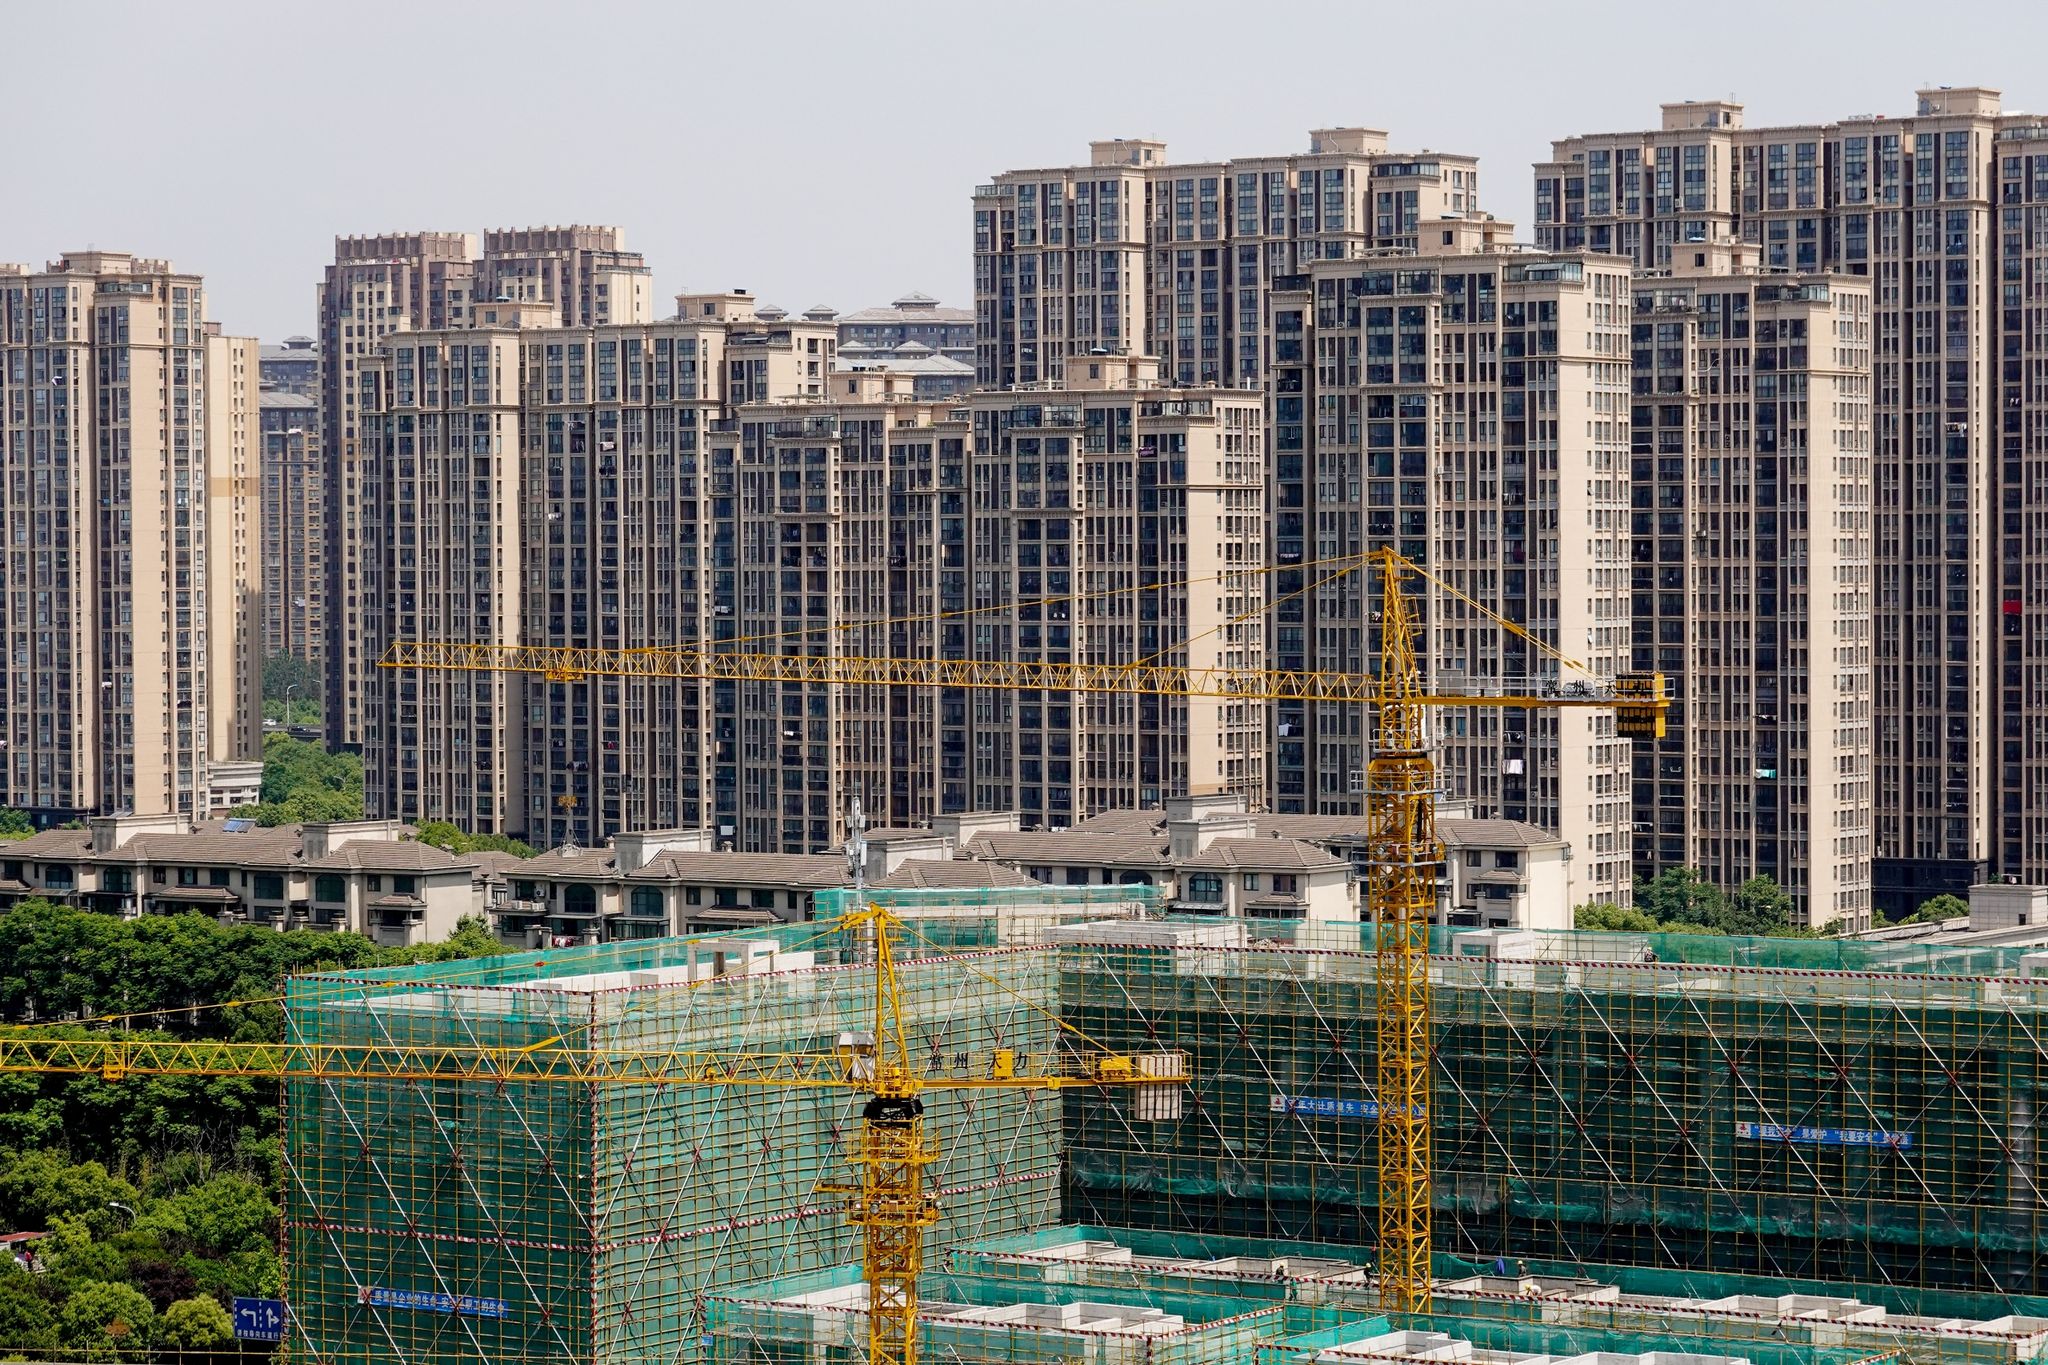 Die Turbulenzen bei den großen Immobilienentwicklern in China, die ihre Schulden nicht mehr bedienen können, sorgen für Verunsicherung.